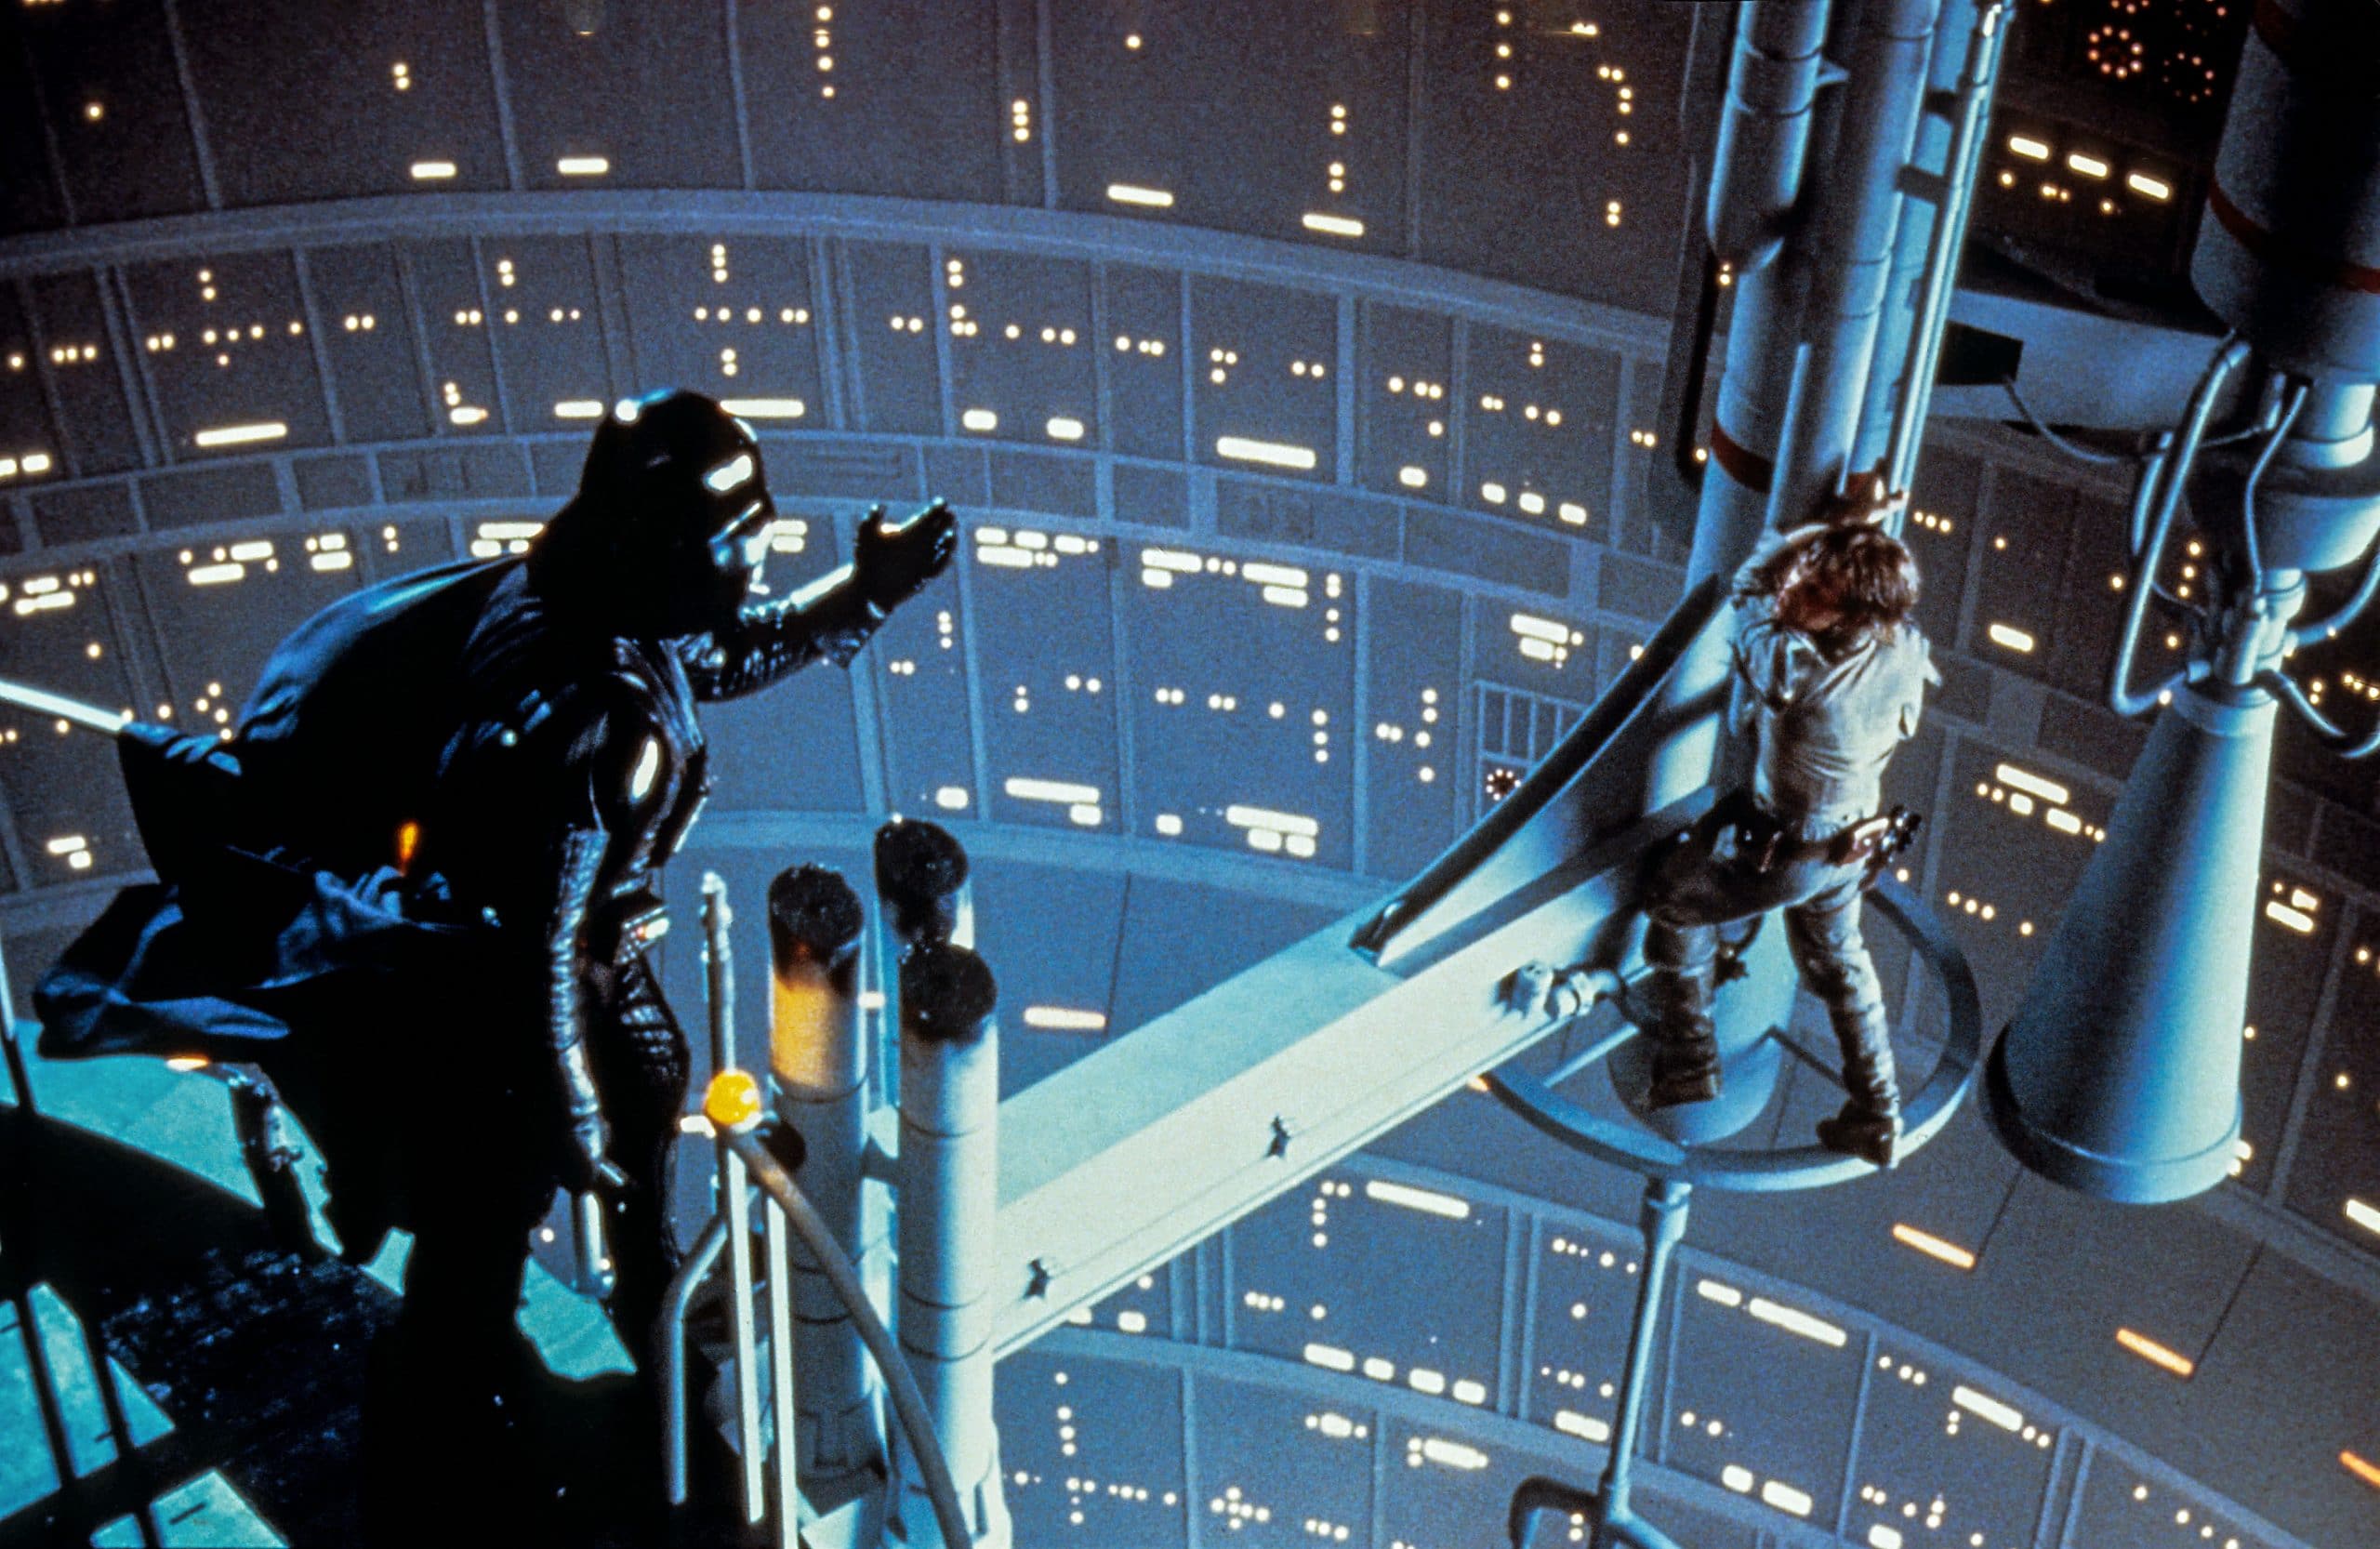 Darth Vader and Luke Skywalker star wars 